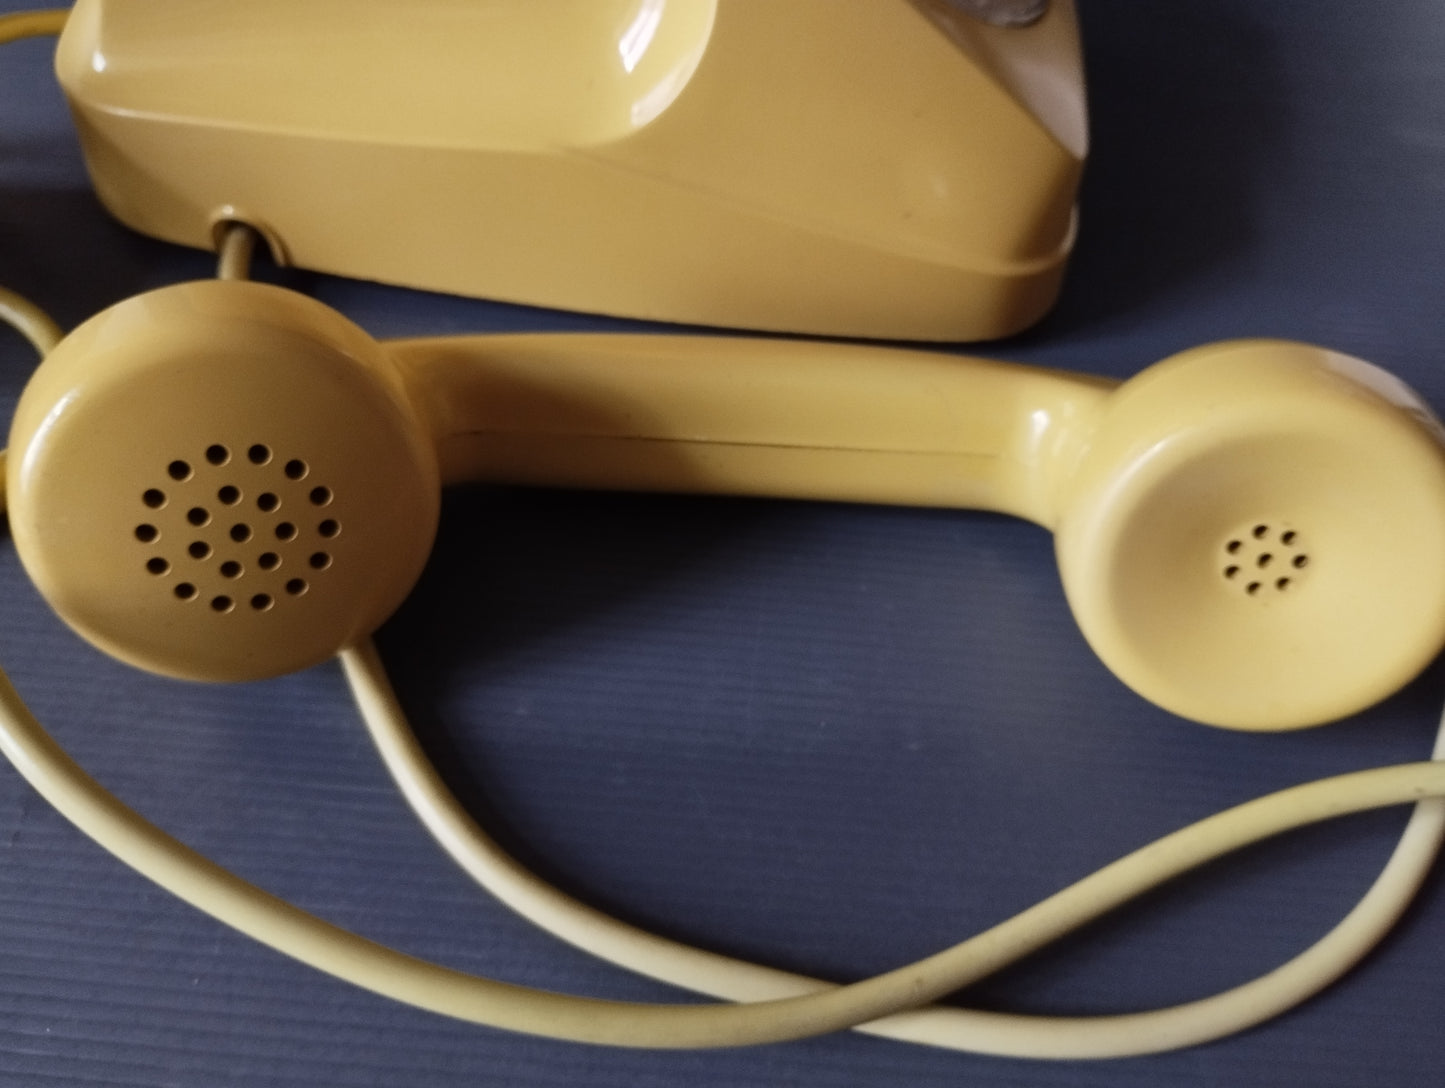 Telefono SIP Vintage

Colore giallo